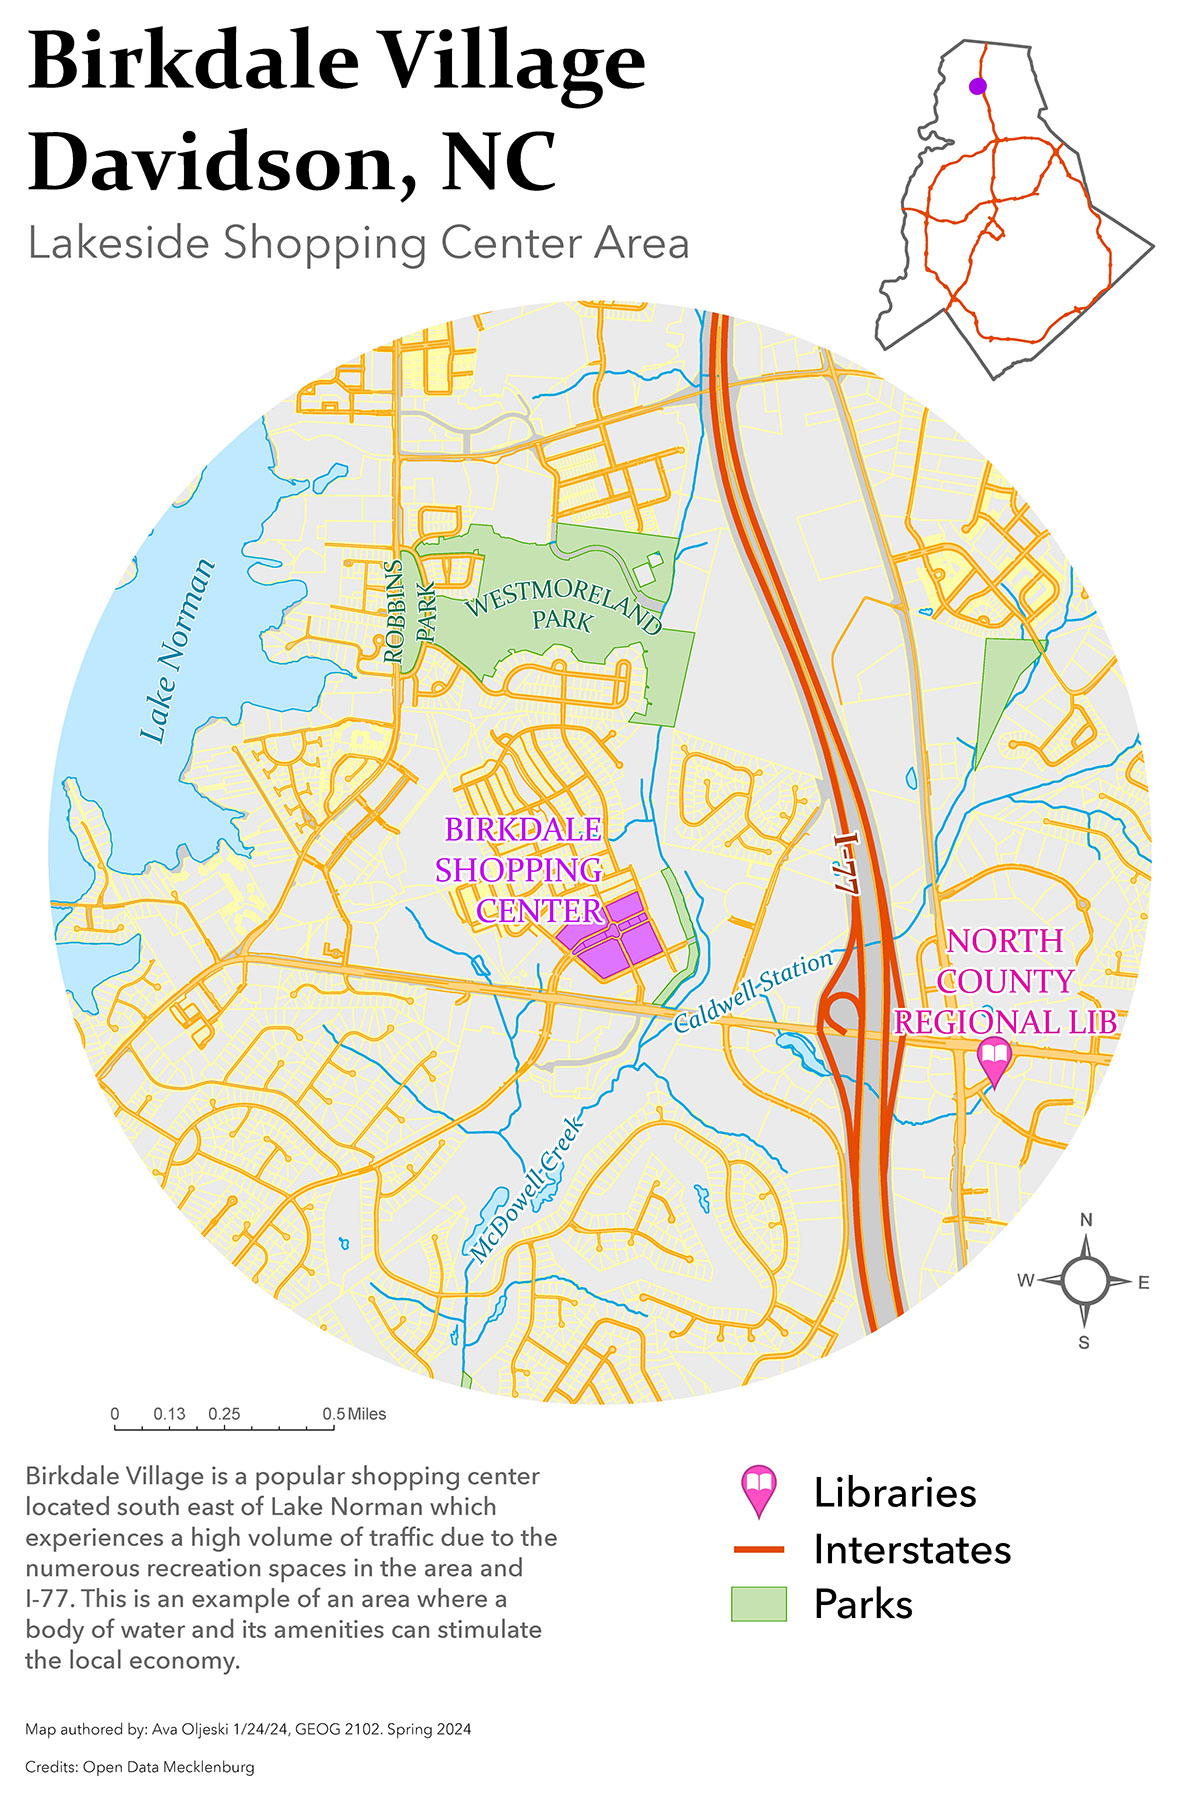 Birkdale-Davidson Map rendition image